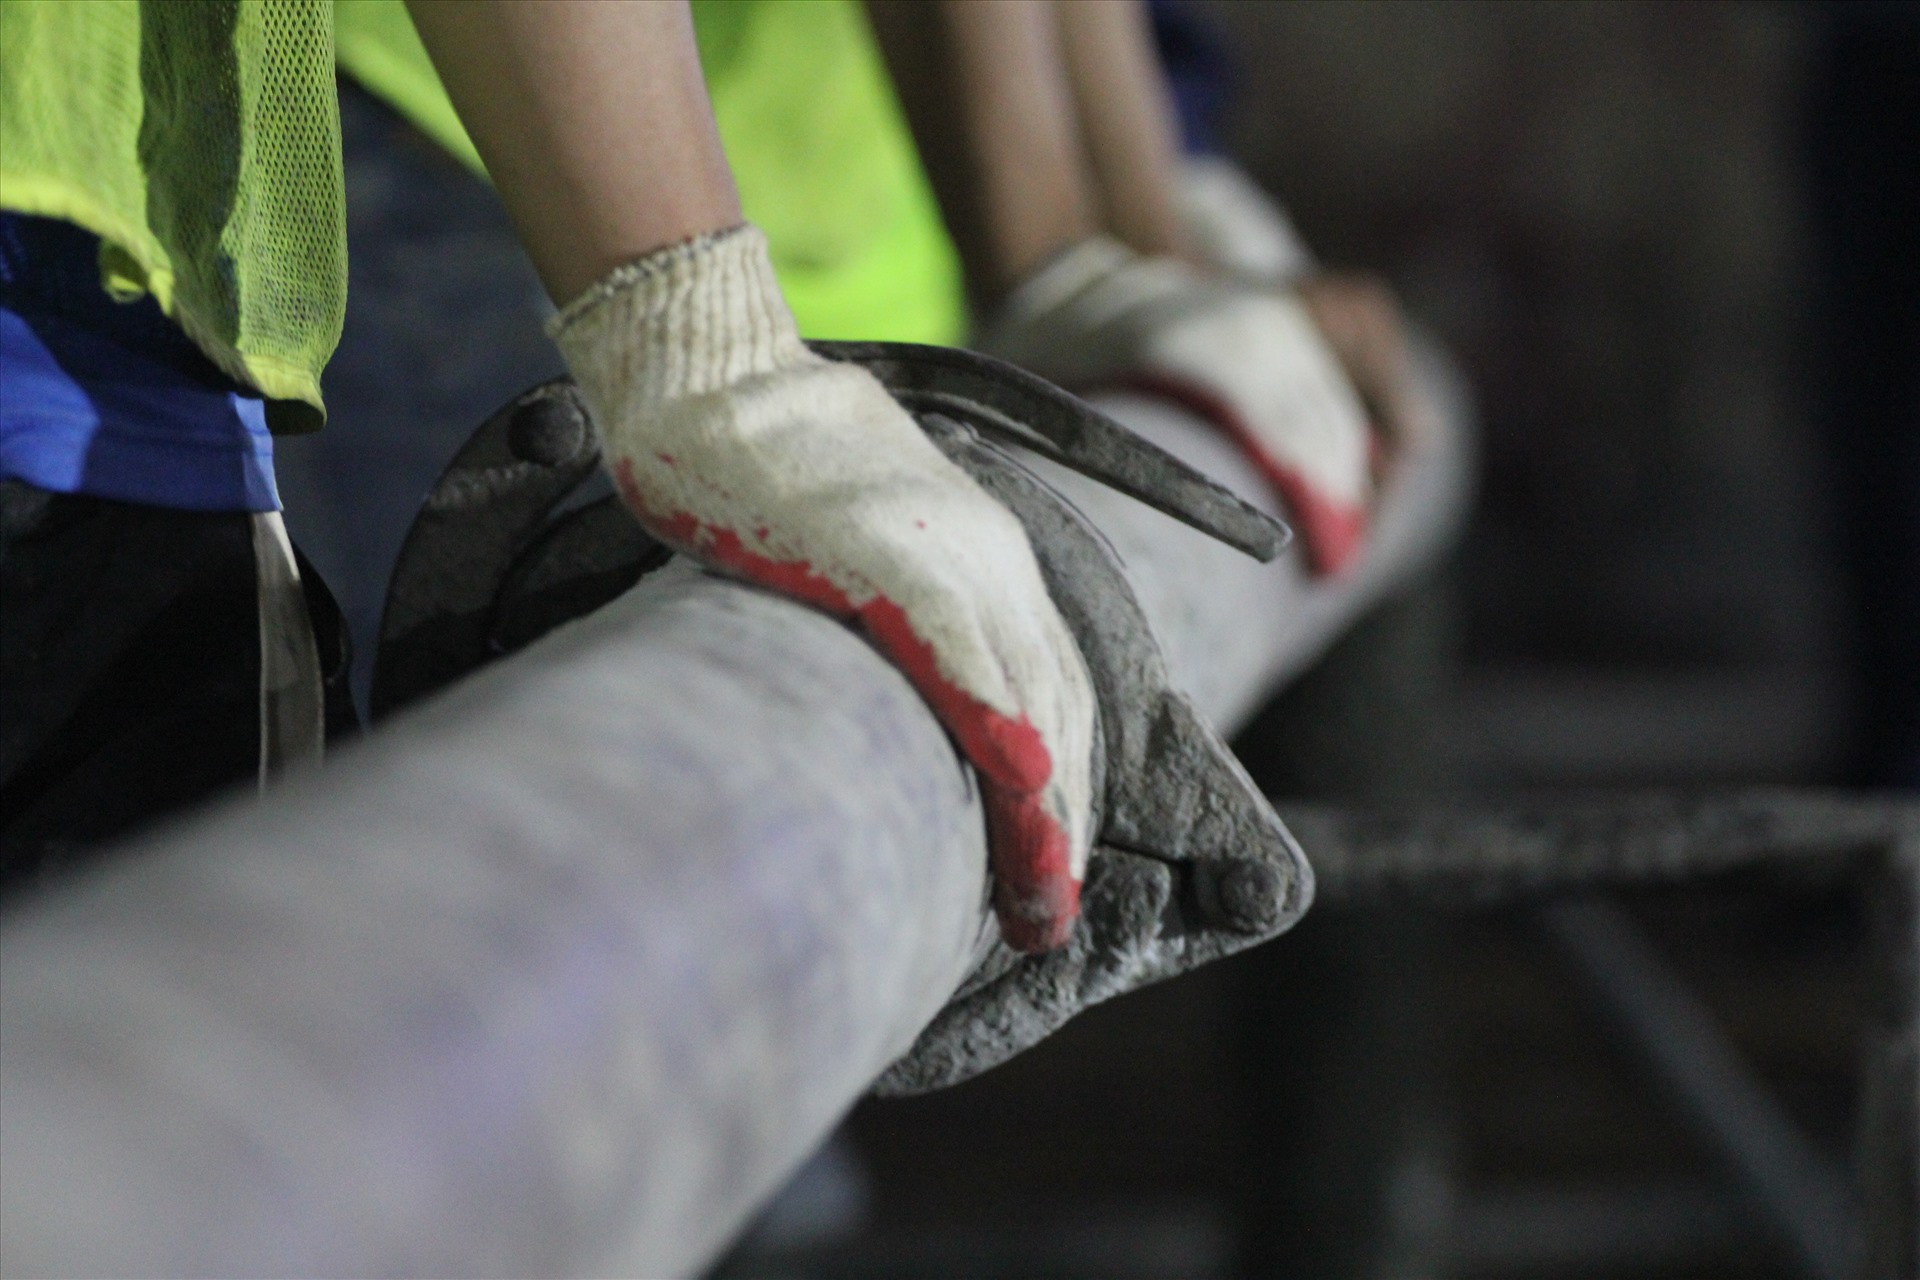 Trong quá trình nhận bê tông, một vài công nhân liên tục phải dùng búa đập vào các điểm nối để tránh bê tông bị nghẽn. Một vài công nhân dùng tay giữ lại ống bê tông.